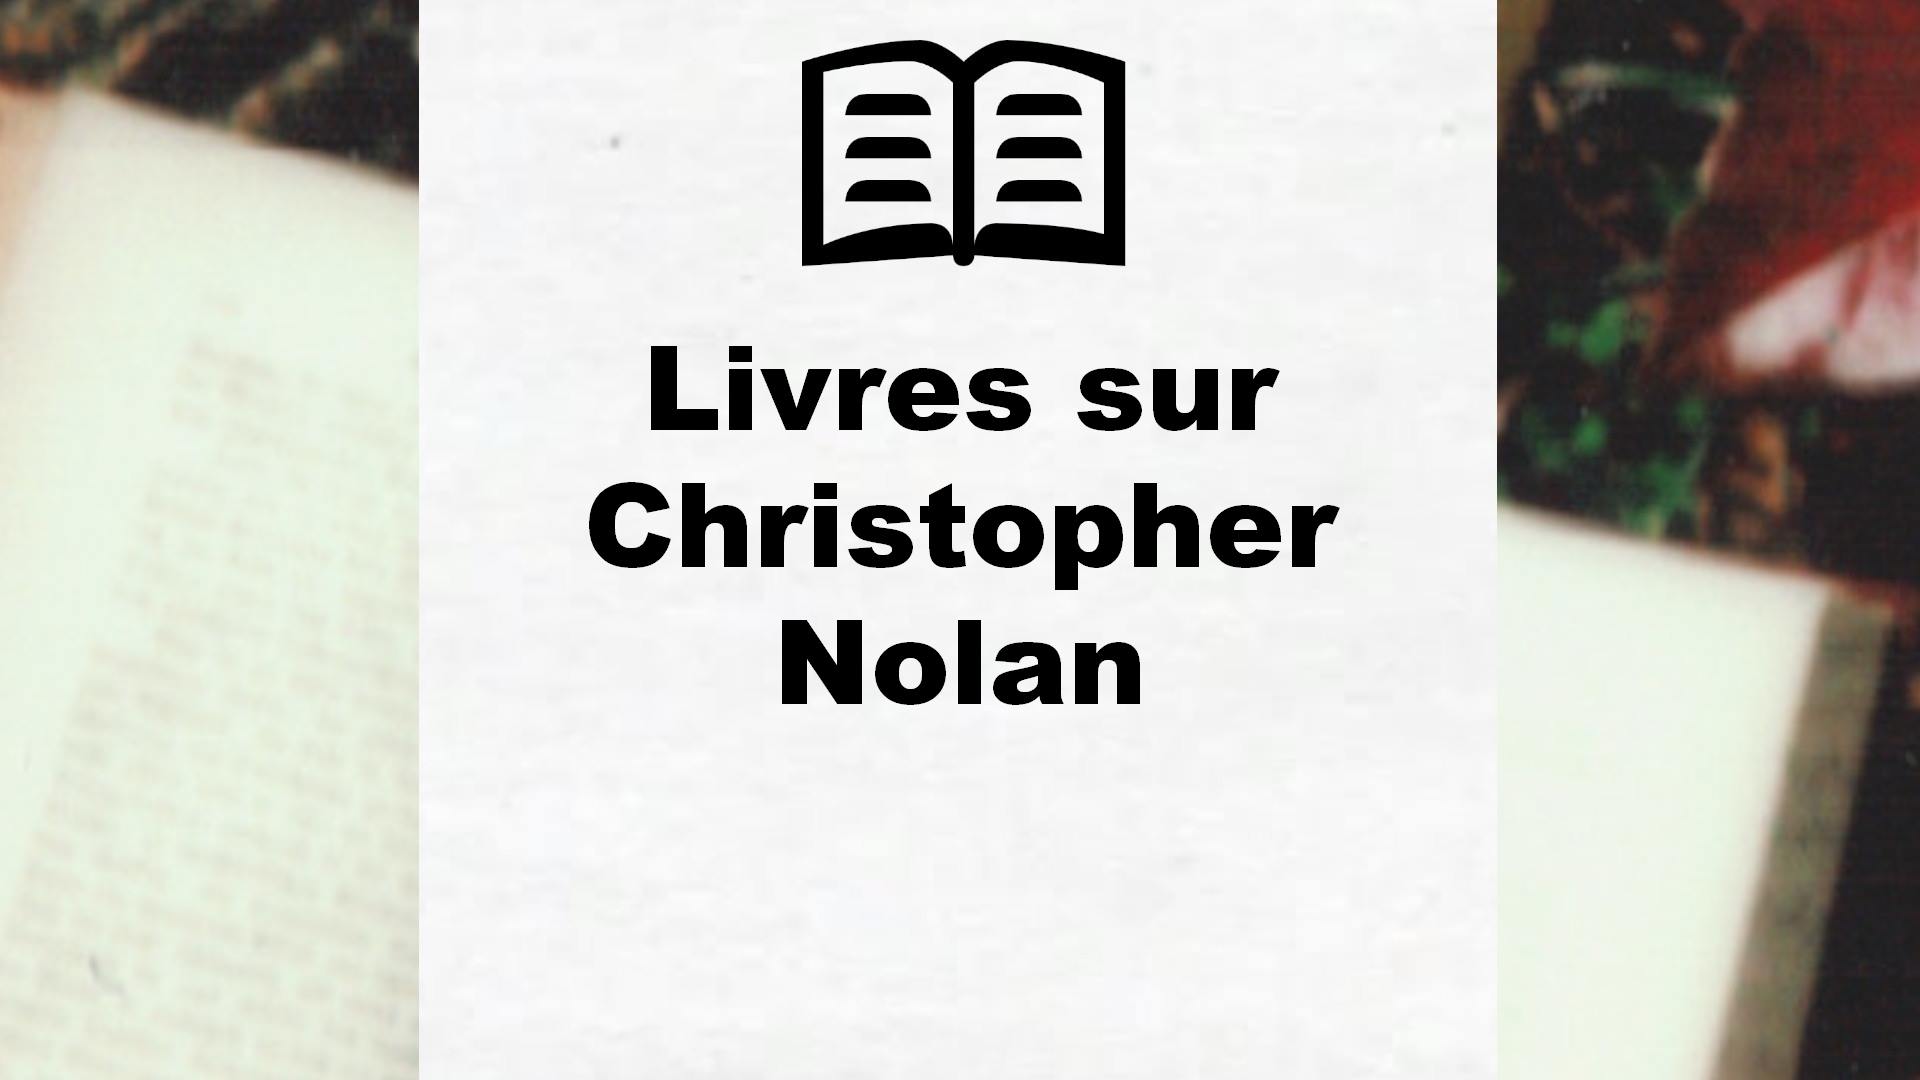 Livres sur Christopher Nolan